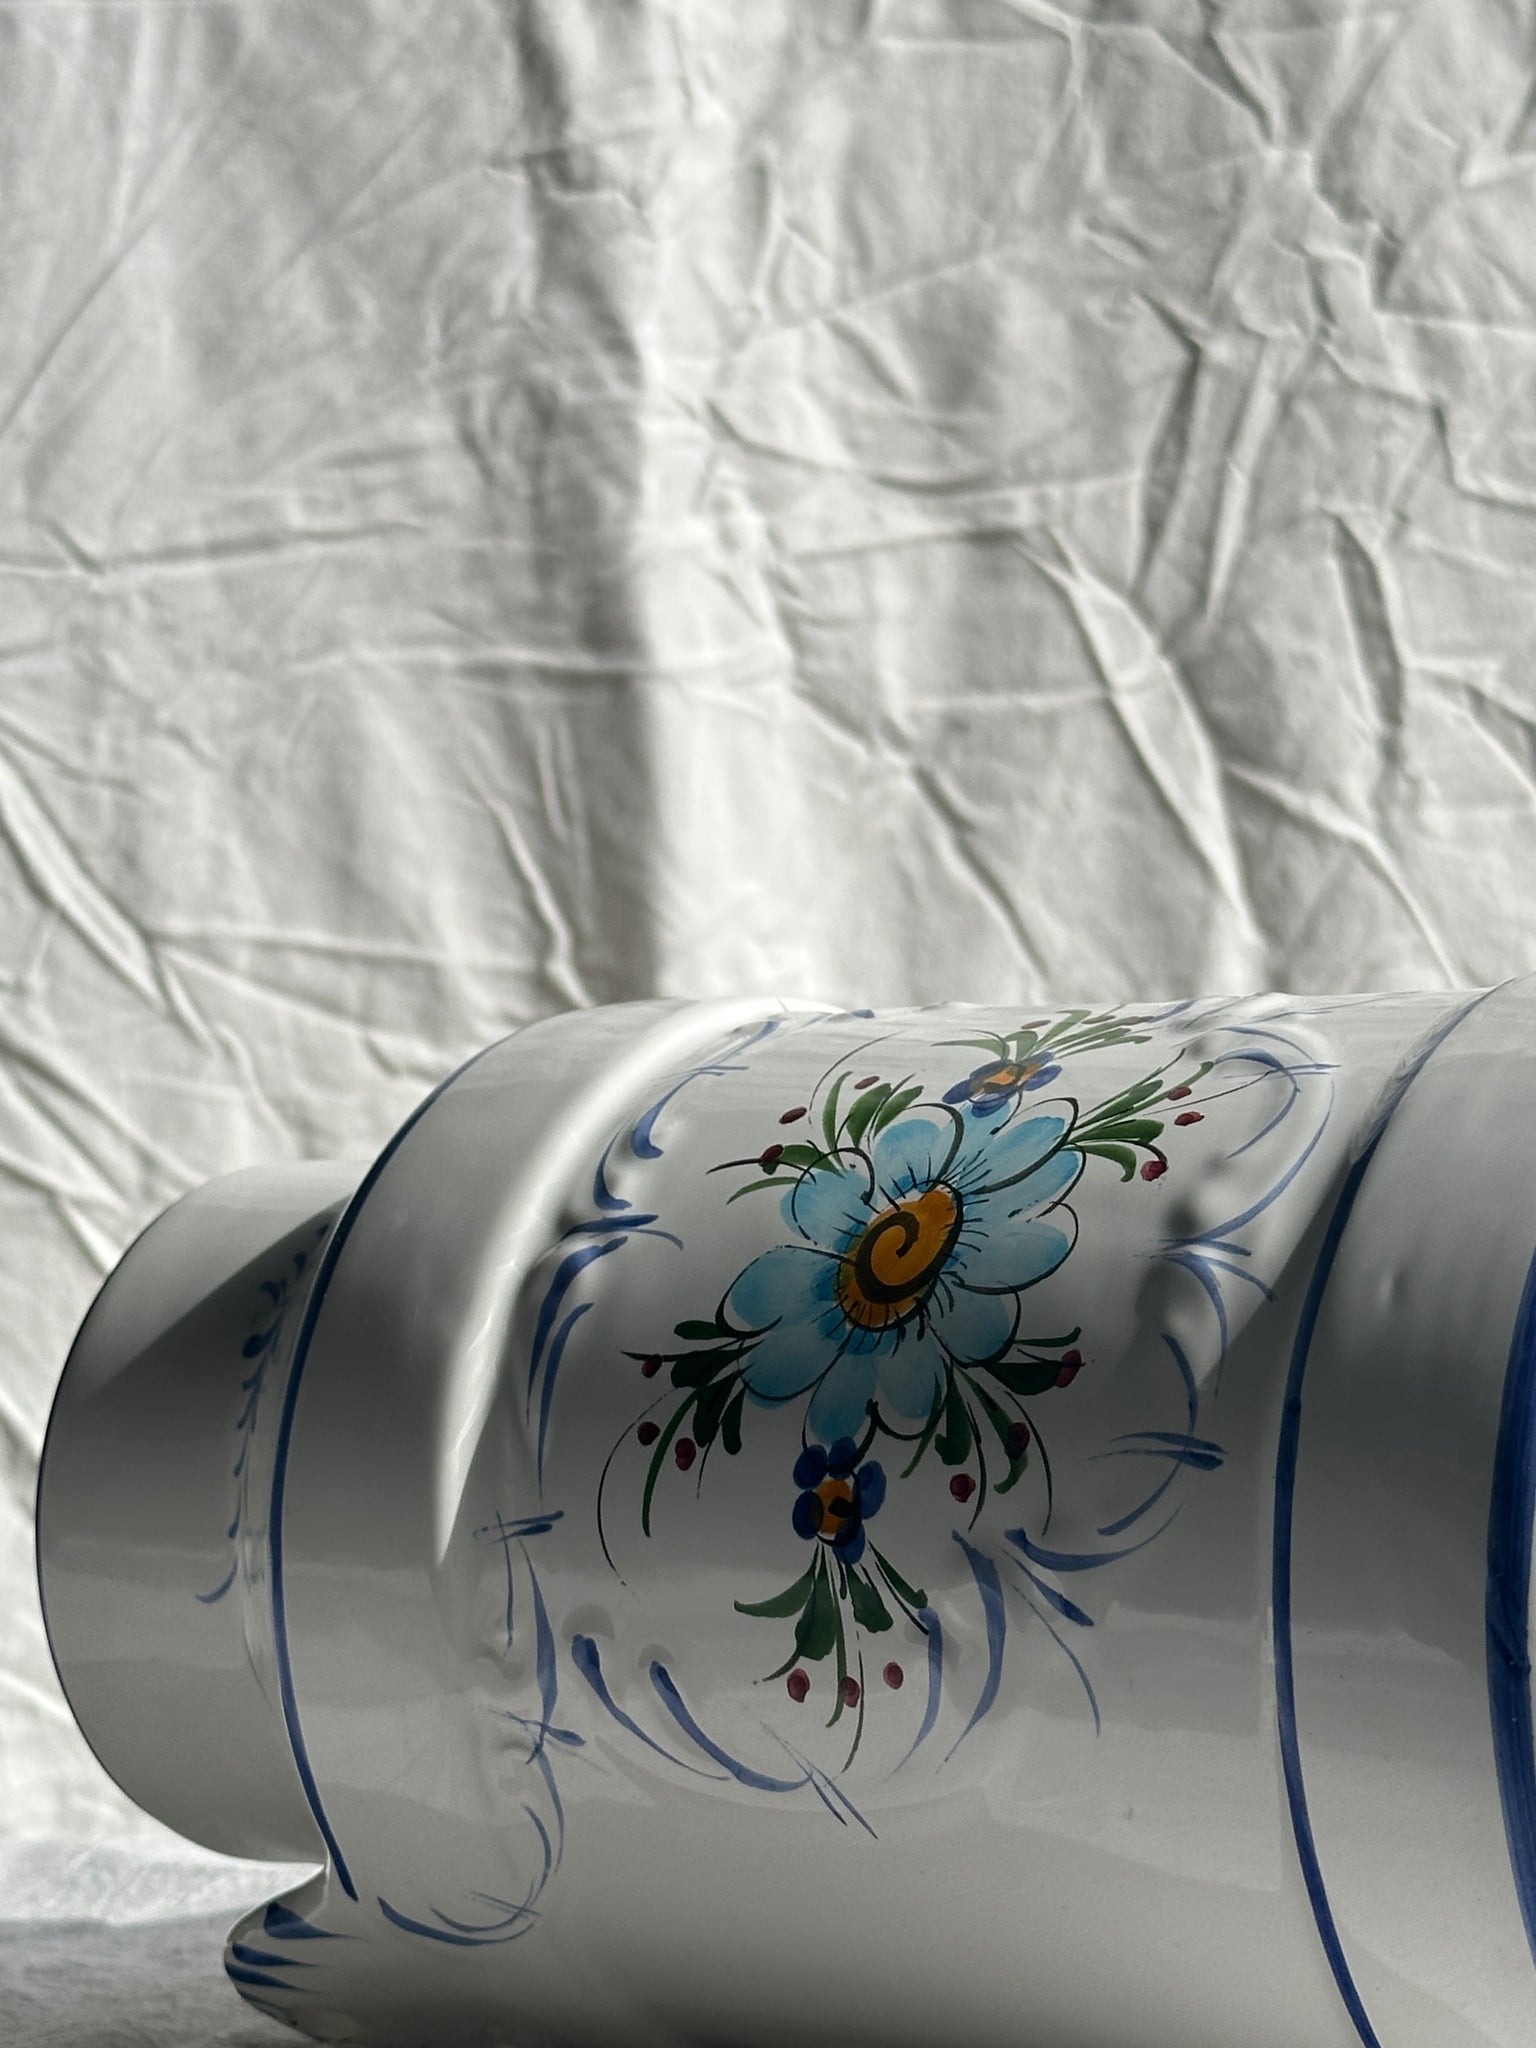 Pot à lait en faïence peint à la main vase